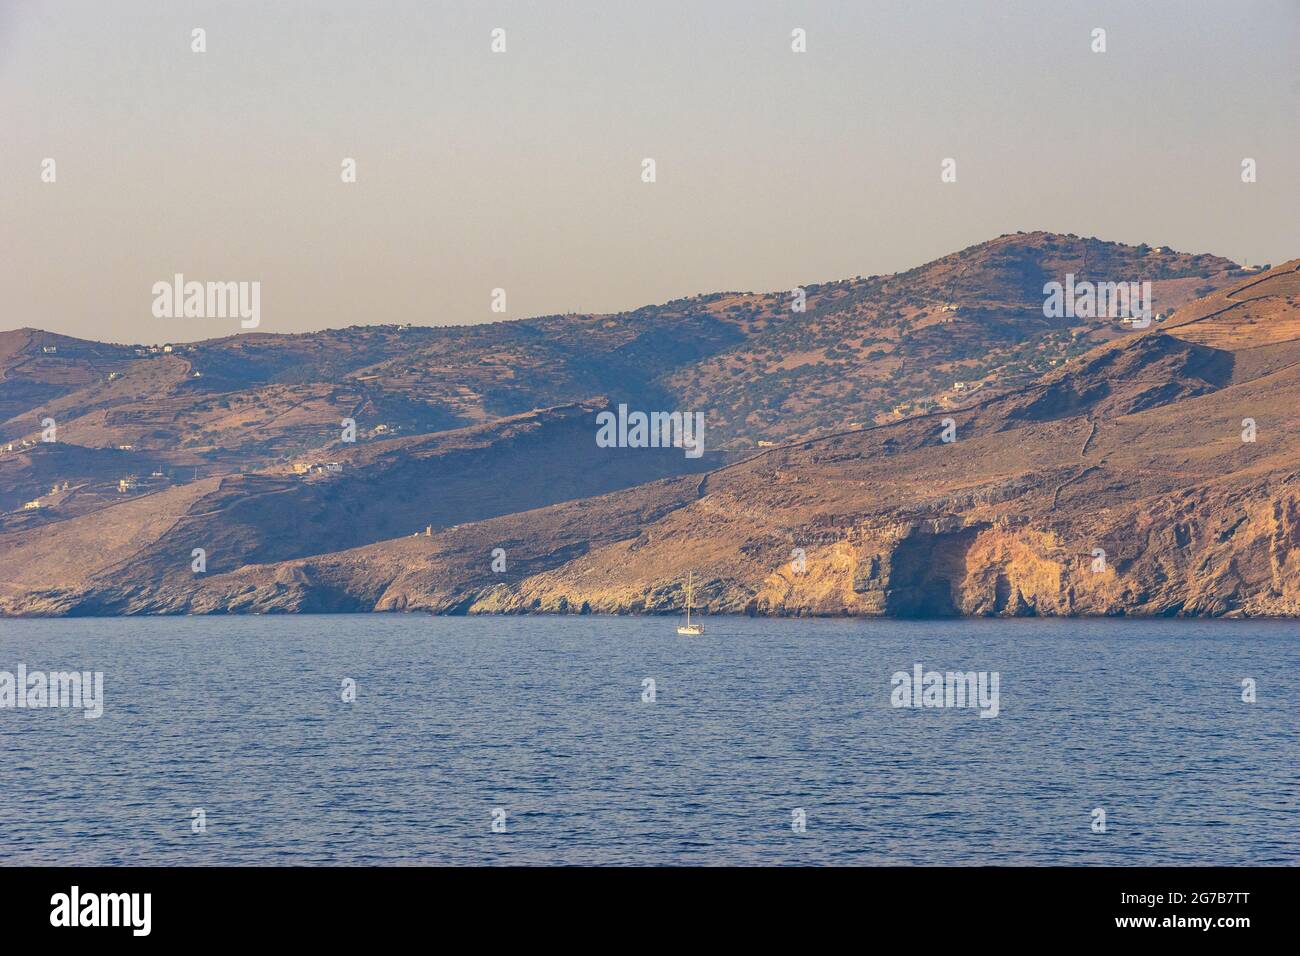 Landschaftlich schöner Blick auf das Meer in der Nähe des Leuchtturms Tamelos auf dem Kap Tamelos, auf der Südseite der Insel Kea, Griechenland Stockfoto